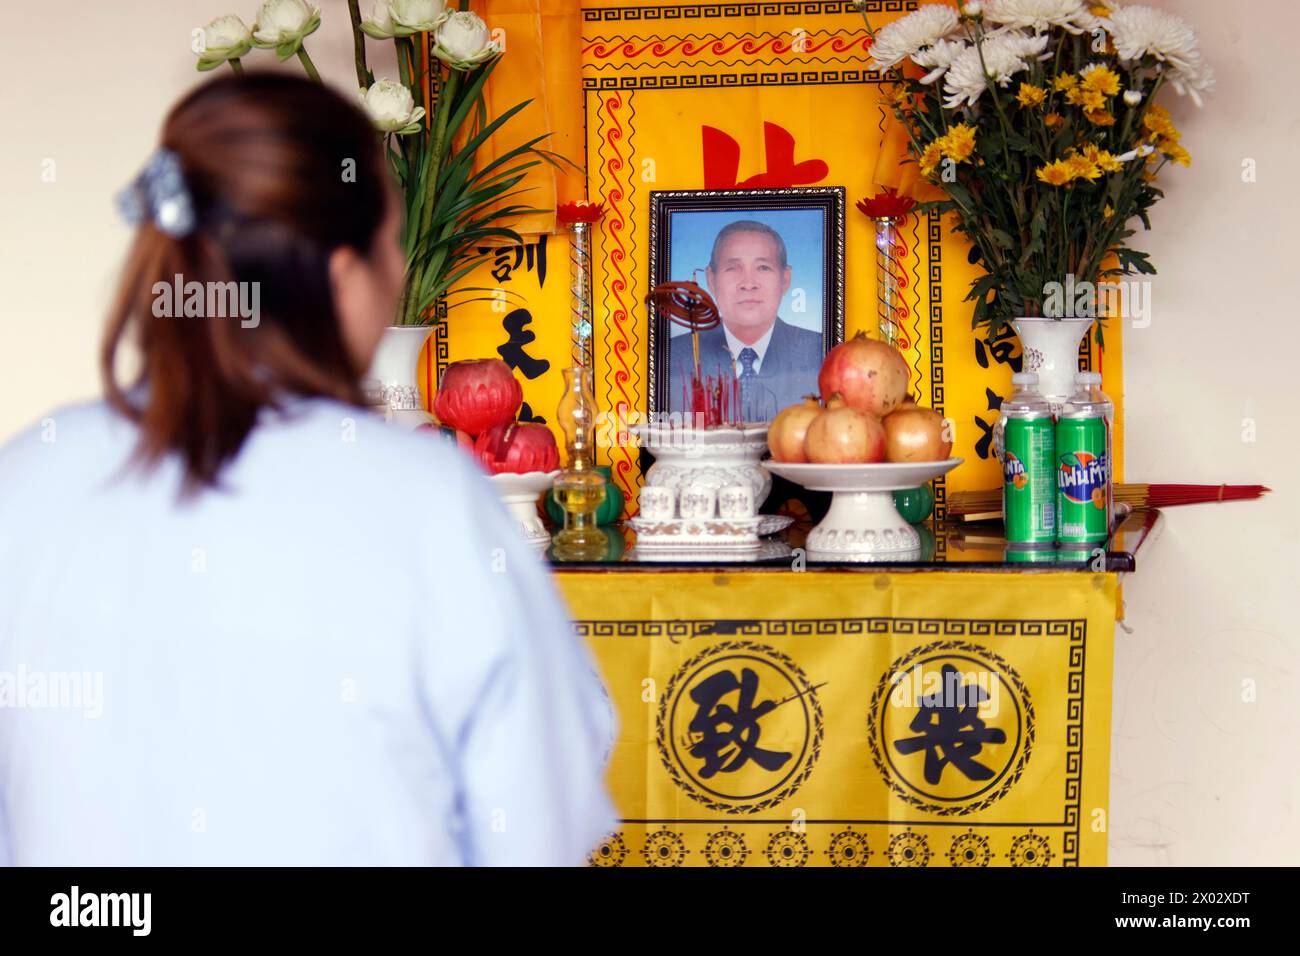 Prières pour le défunt, cérémonie funéraire dans une famille bouddhiste, Tan Chau, Vietnam, Indochine, Asie du Sud-est, Asie Banque D'Images